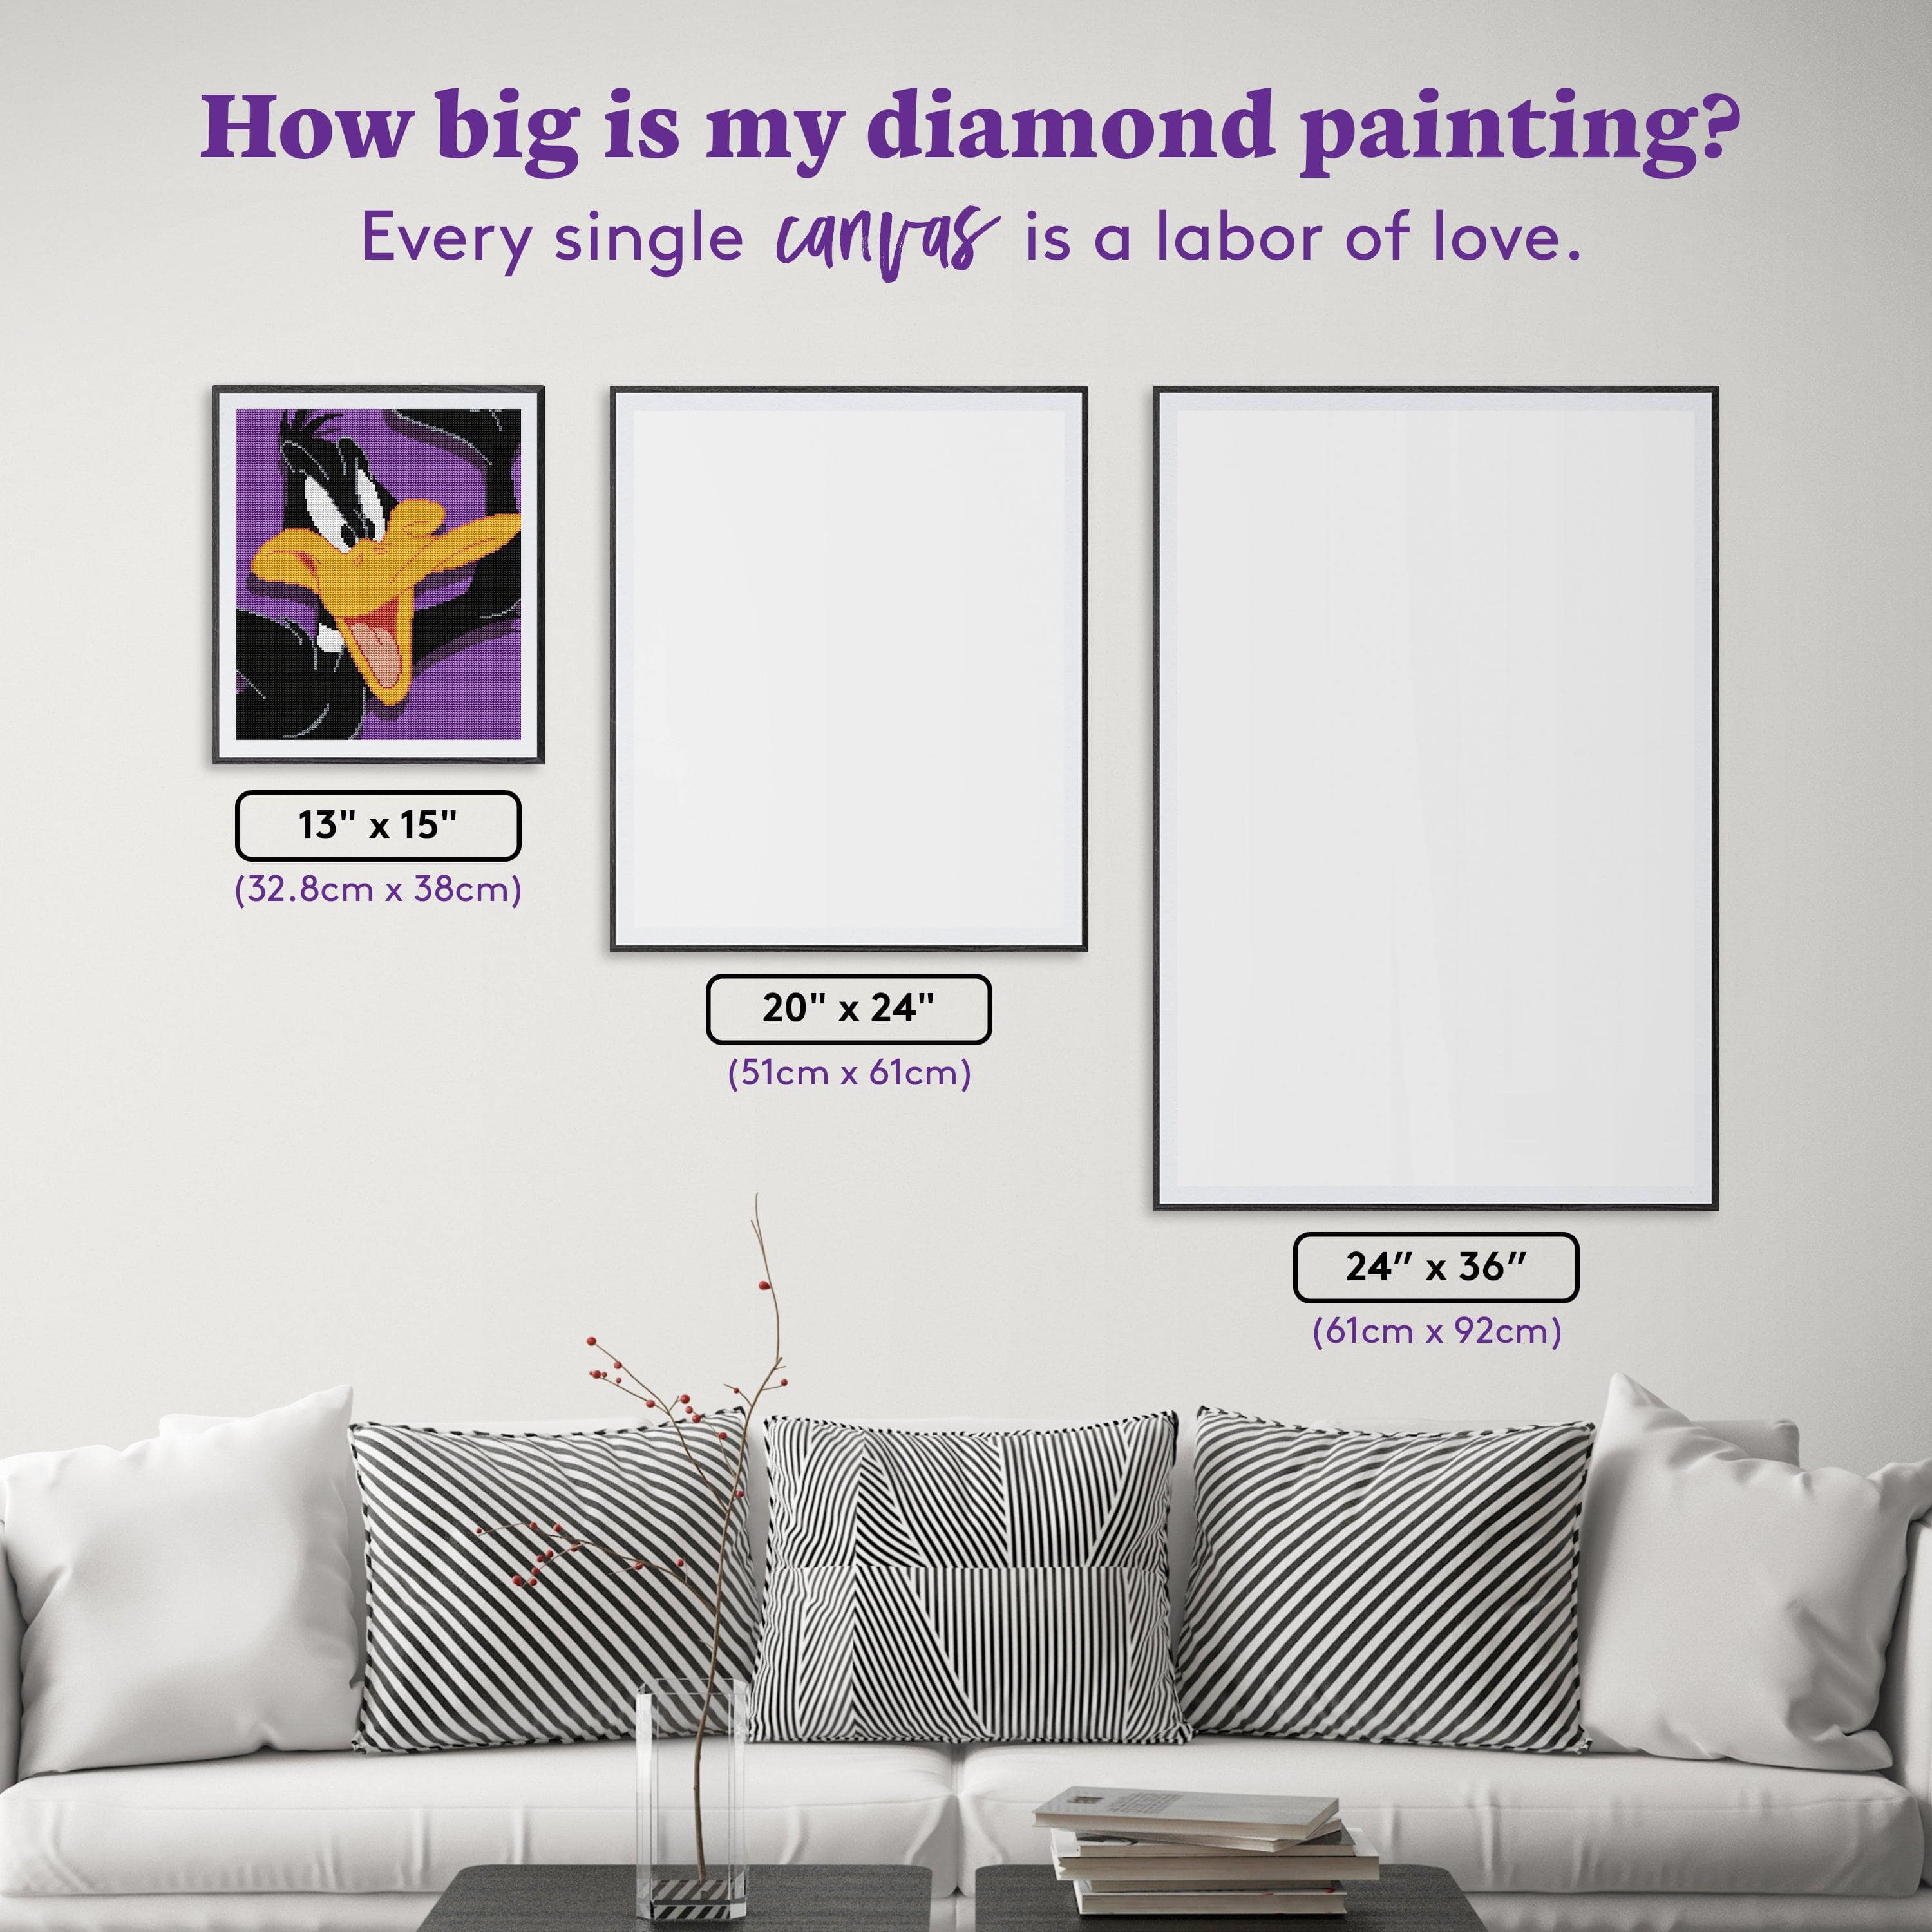 Diamond painting grid ruler experience? : r/diamondpainting